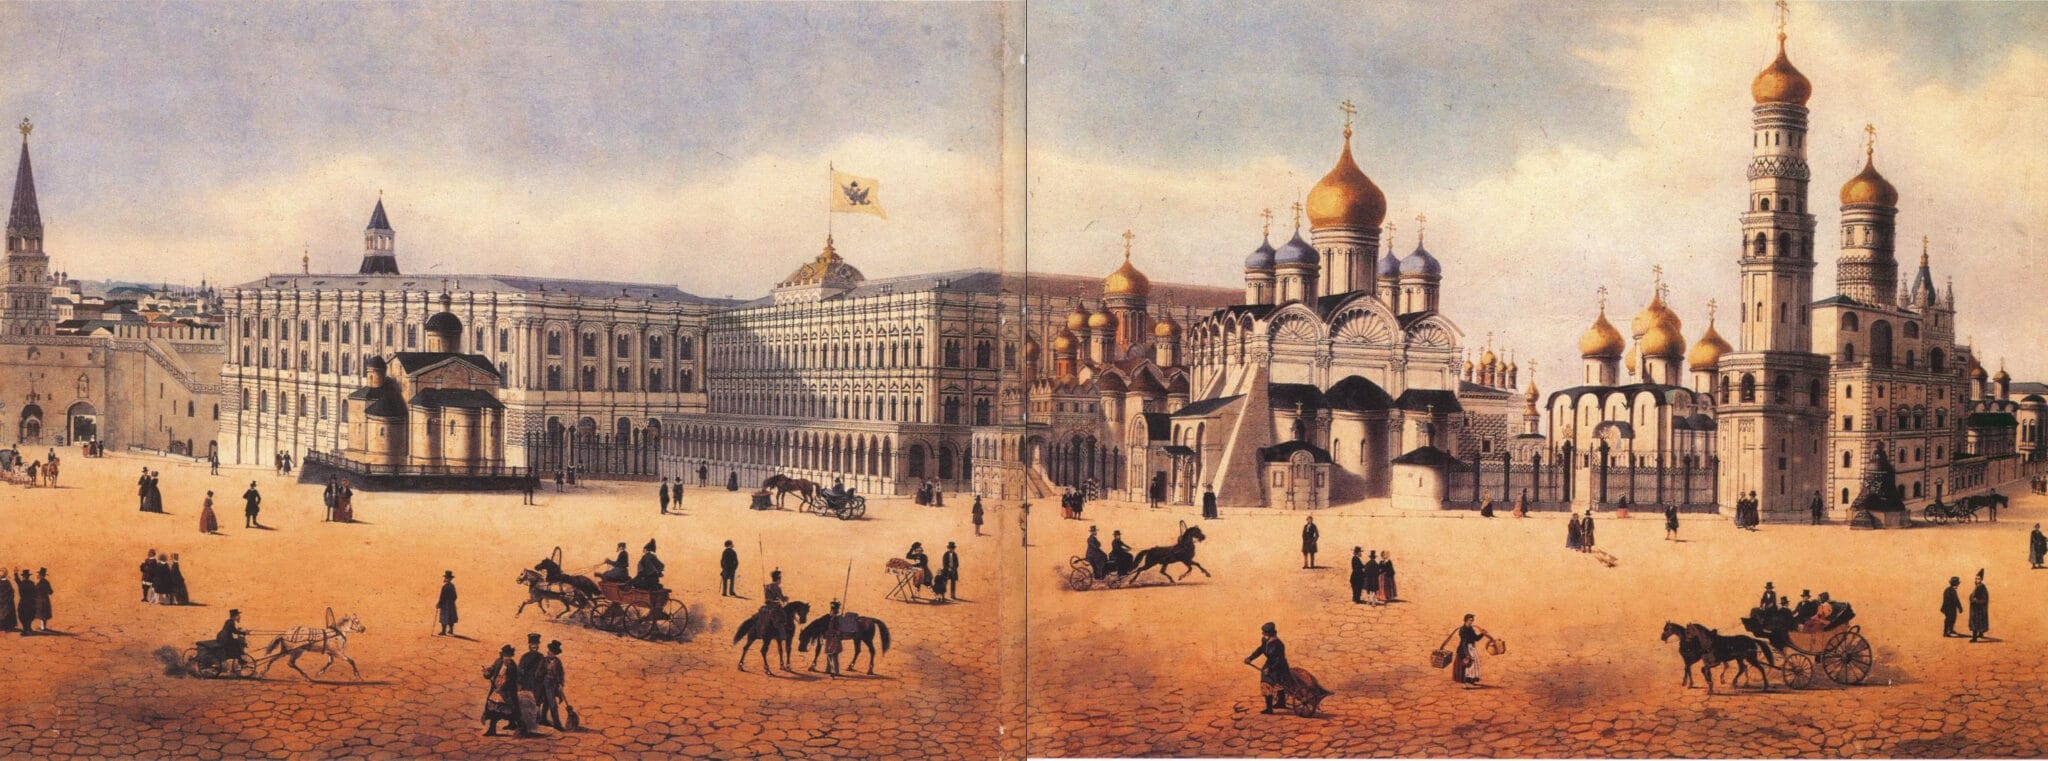 ивановская площадь московского кремля